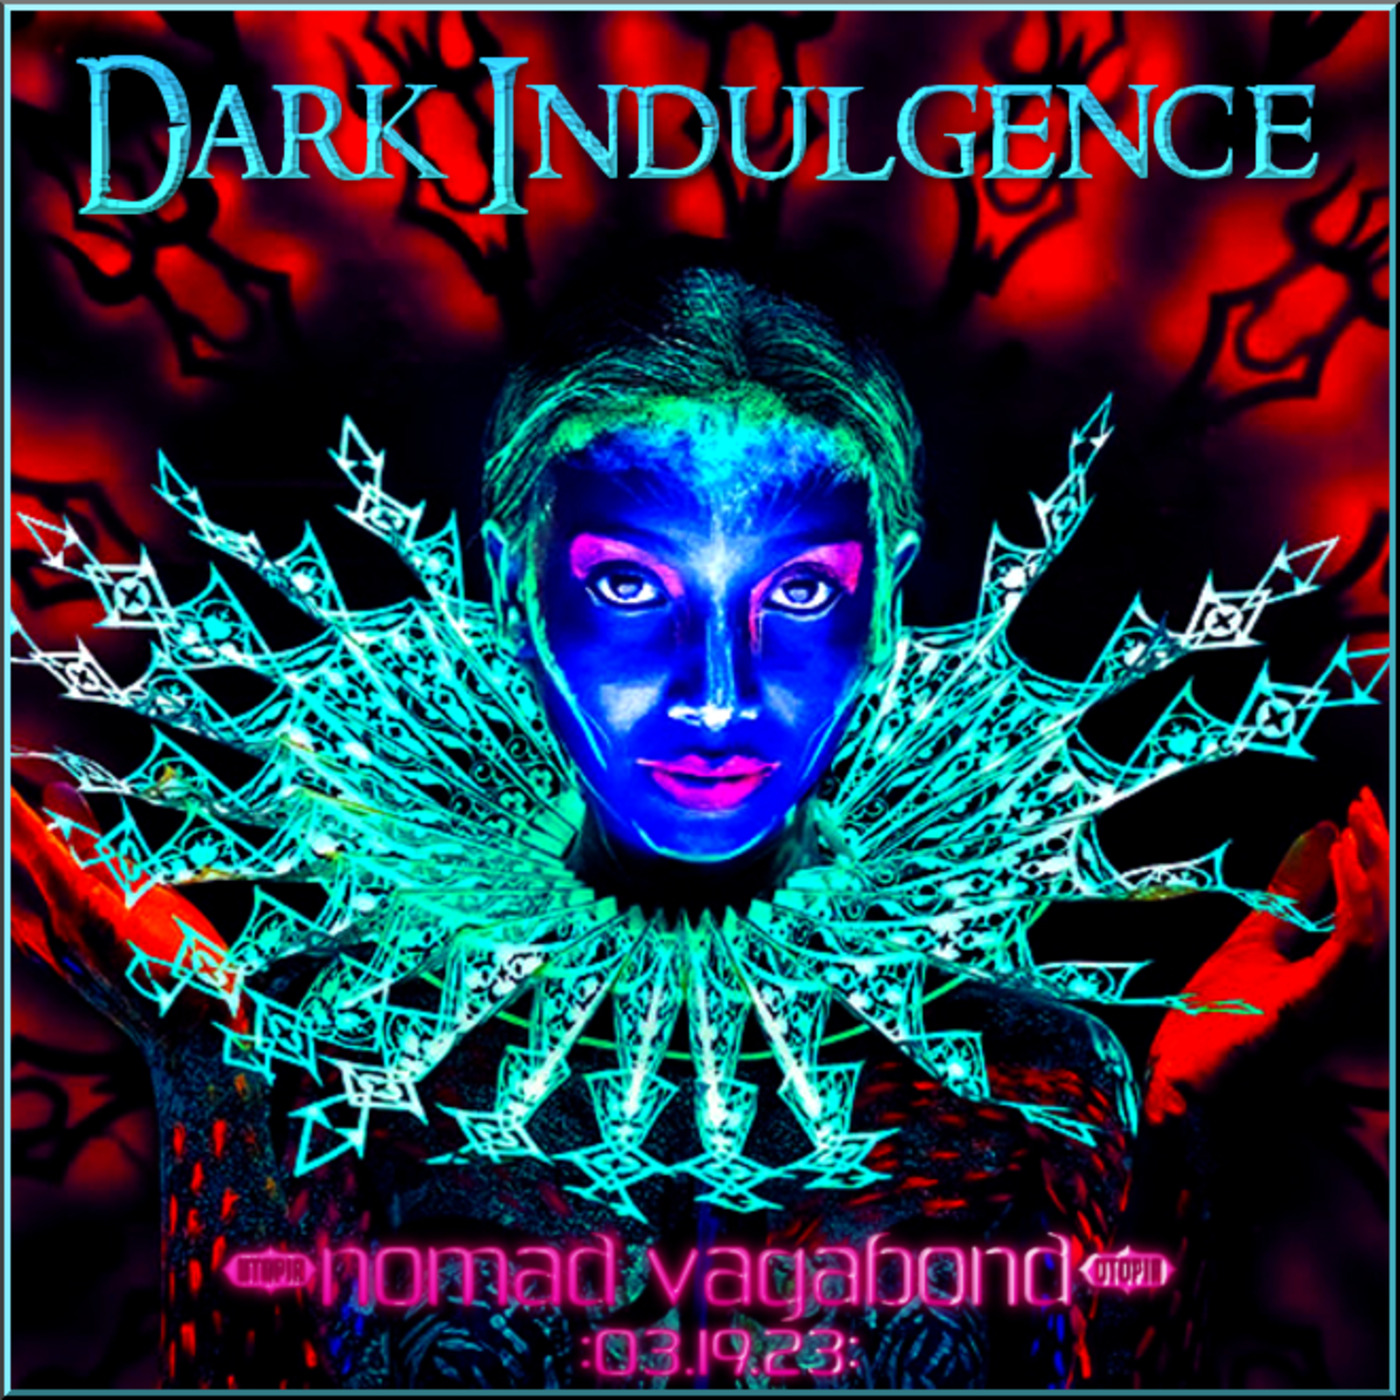 Dark Indulgence 03.19.23 Industrial | EBM | Dark Disco Mixshow by Scott Durand : djscottdurand.com